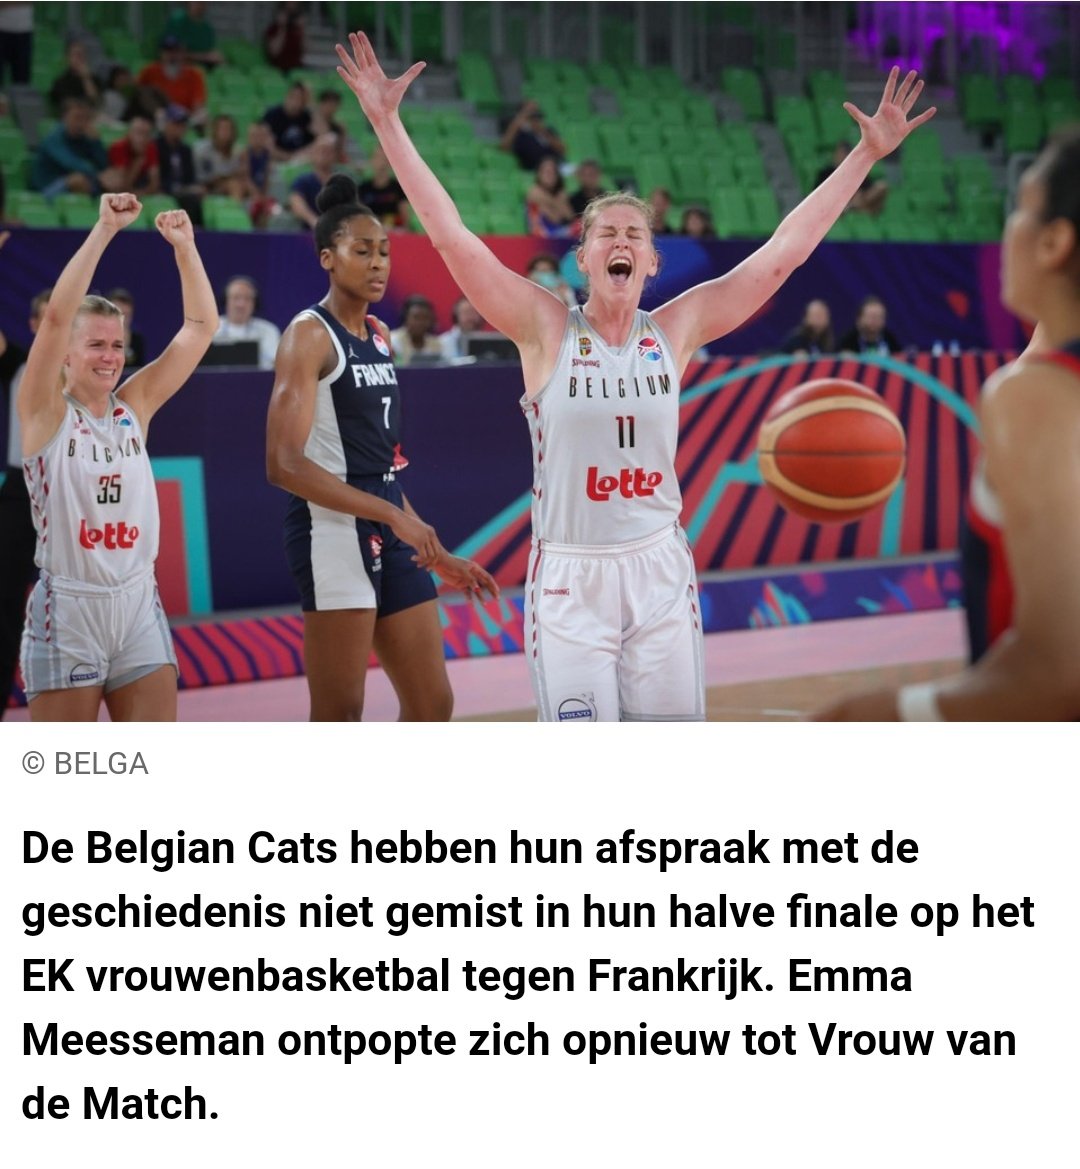 Emma Meesseman, Bazin van de Bucket, Lady of the House 👏👏👏
#BelgianCats